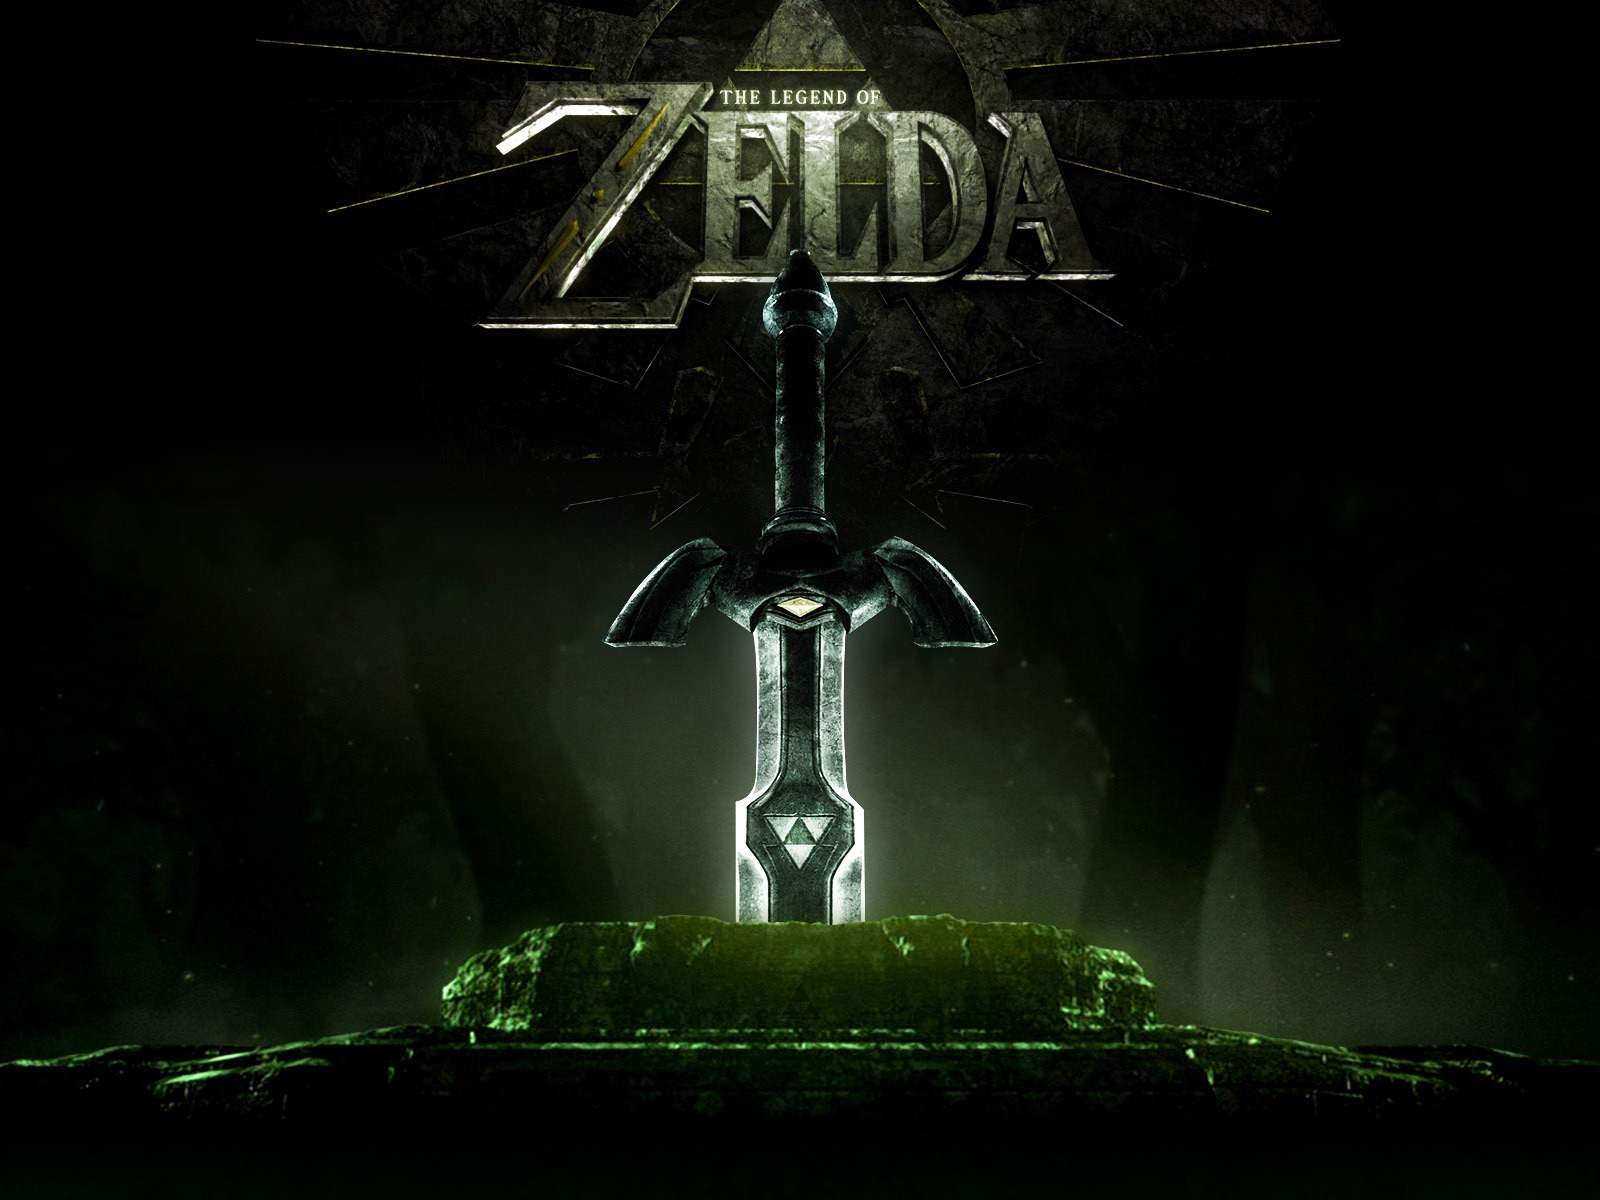 Legend of Zelda for 1600 x 1200 resolution